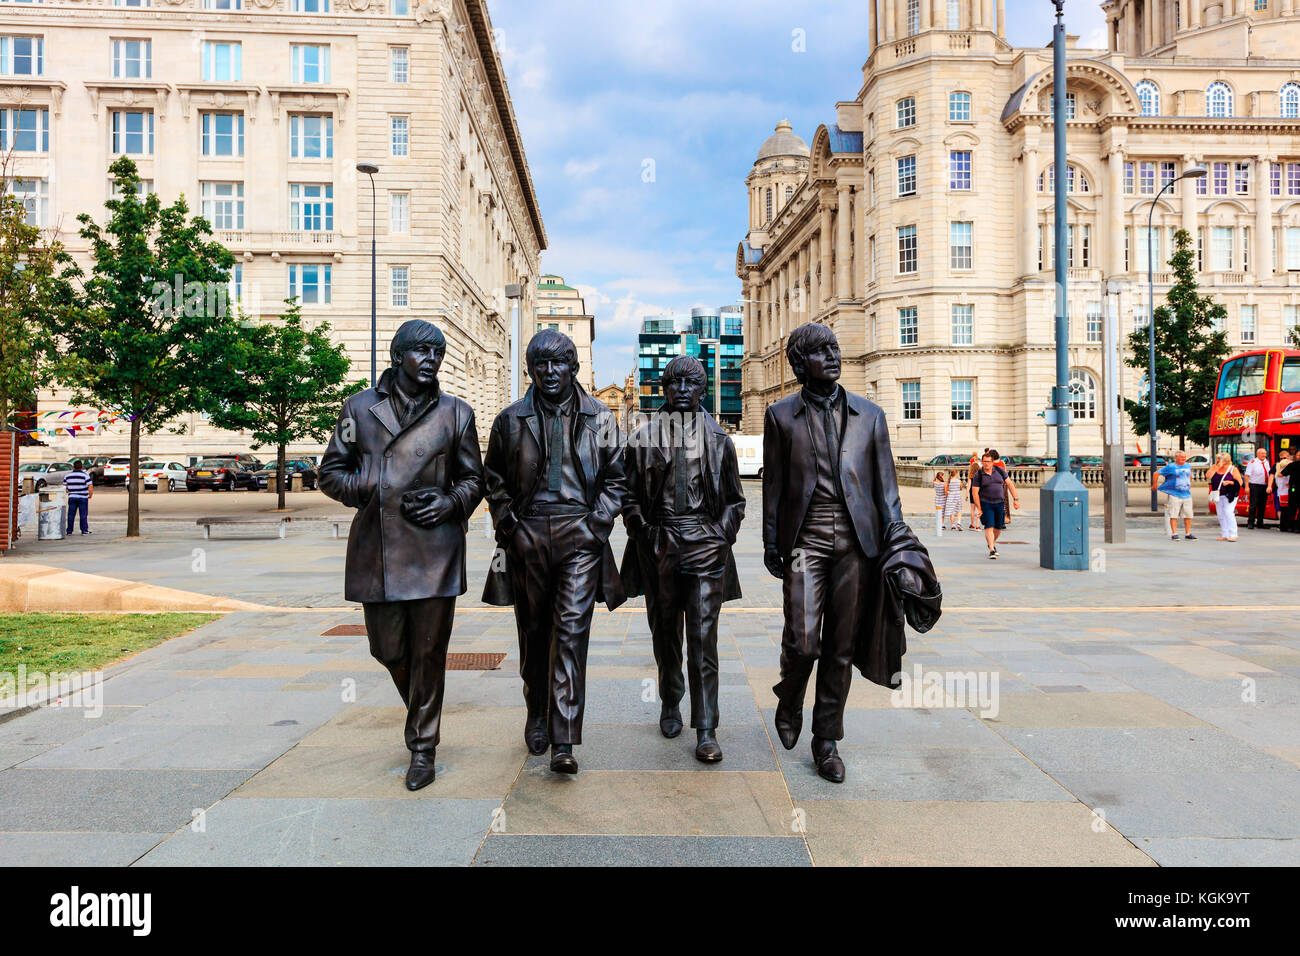 Statua di bronzo di quattro liverpool beatles sorge sul lungomare di liverpool dello scultore Andrea Edwards. Foto Stock